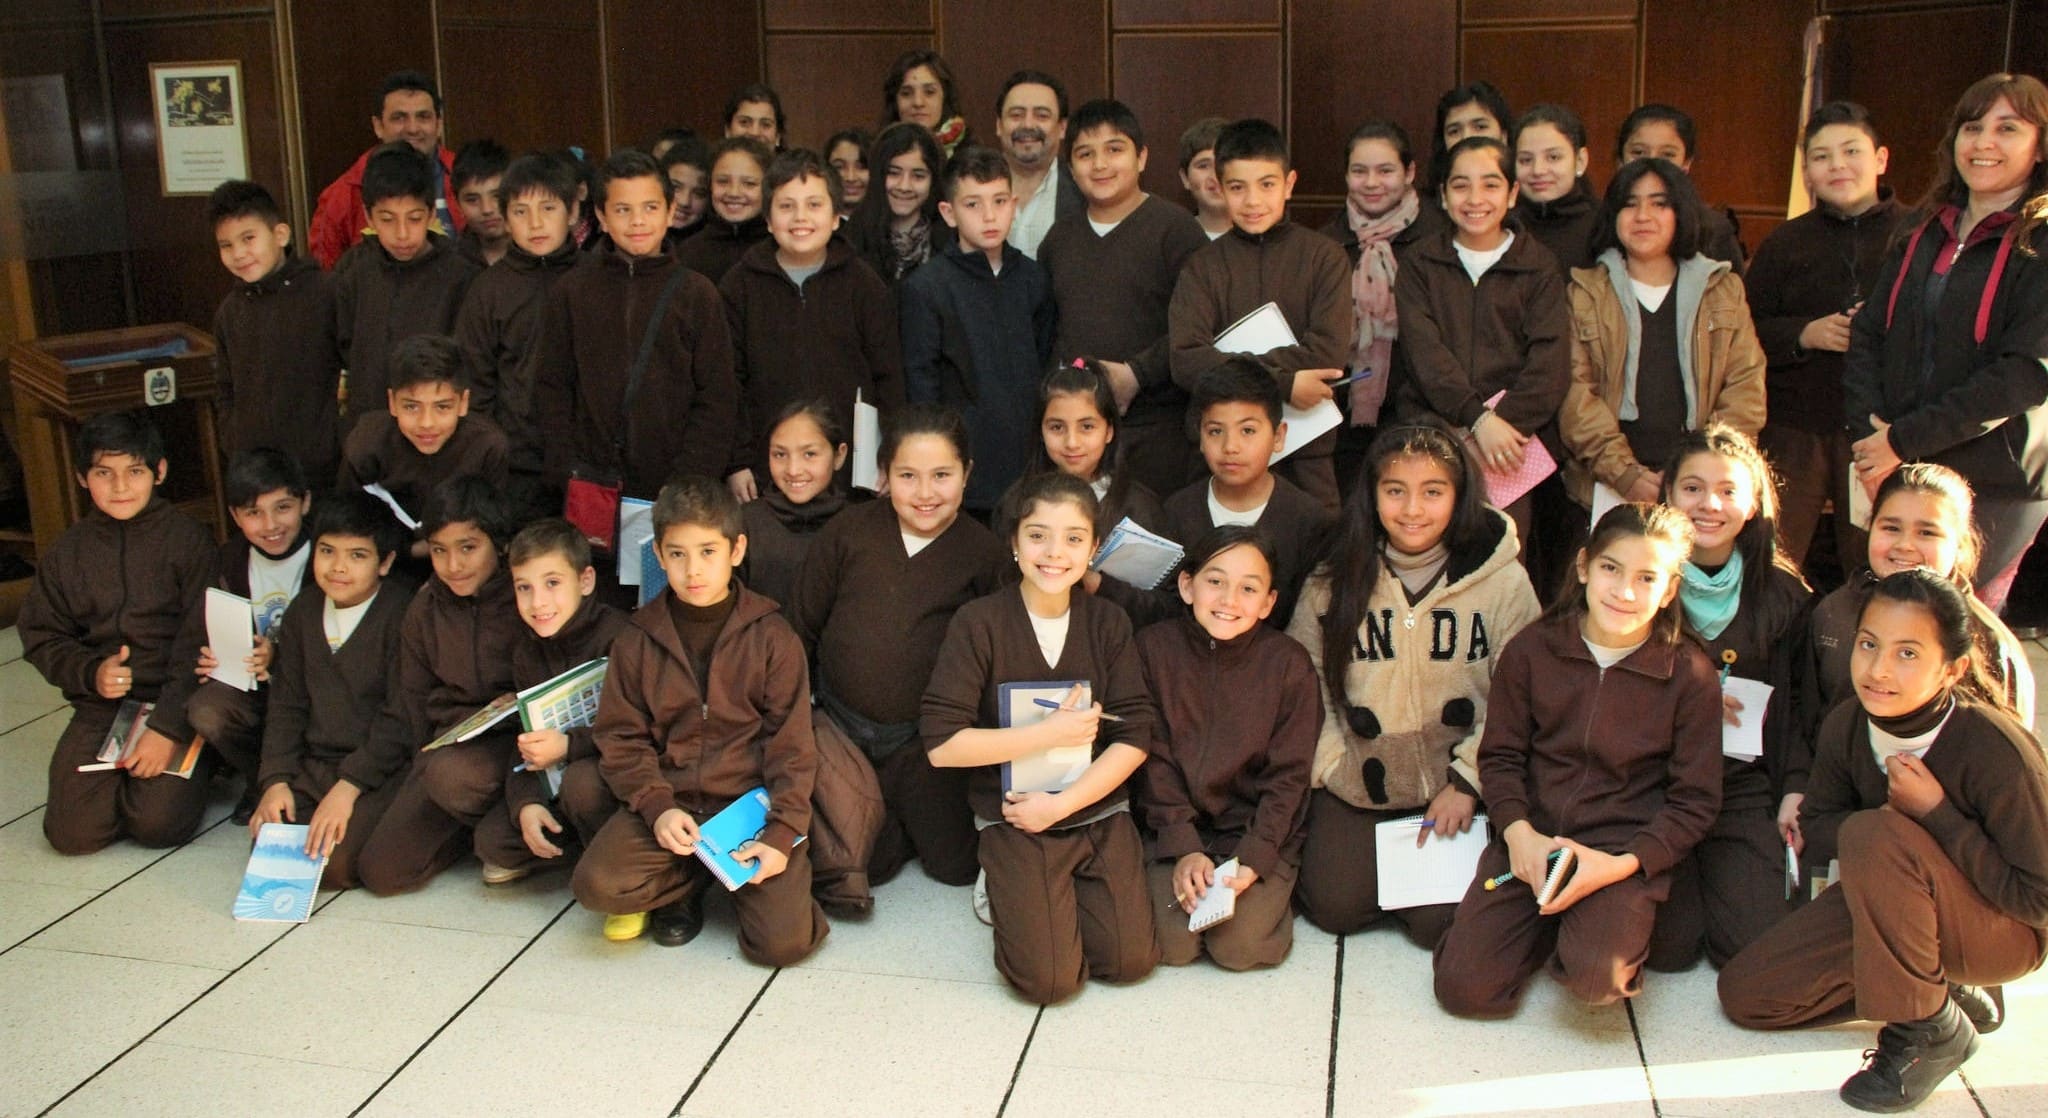 El secretario Legislativo de la Cámara de Diputados, Mario Herrero. junto a estudiantes y docentes del colegio "San Antonio de Padua". 